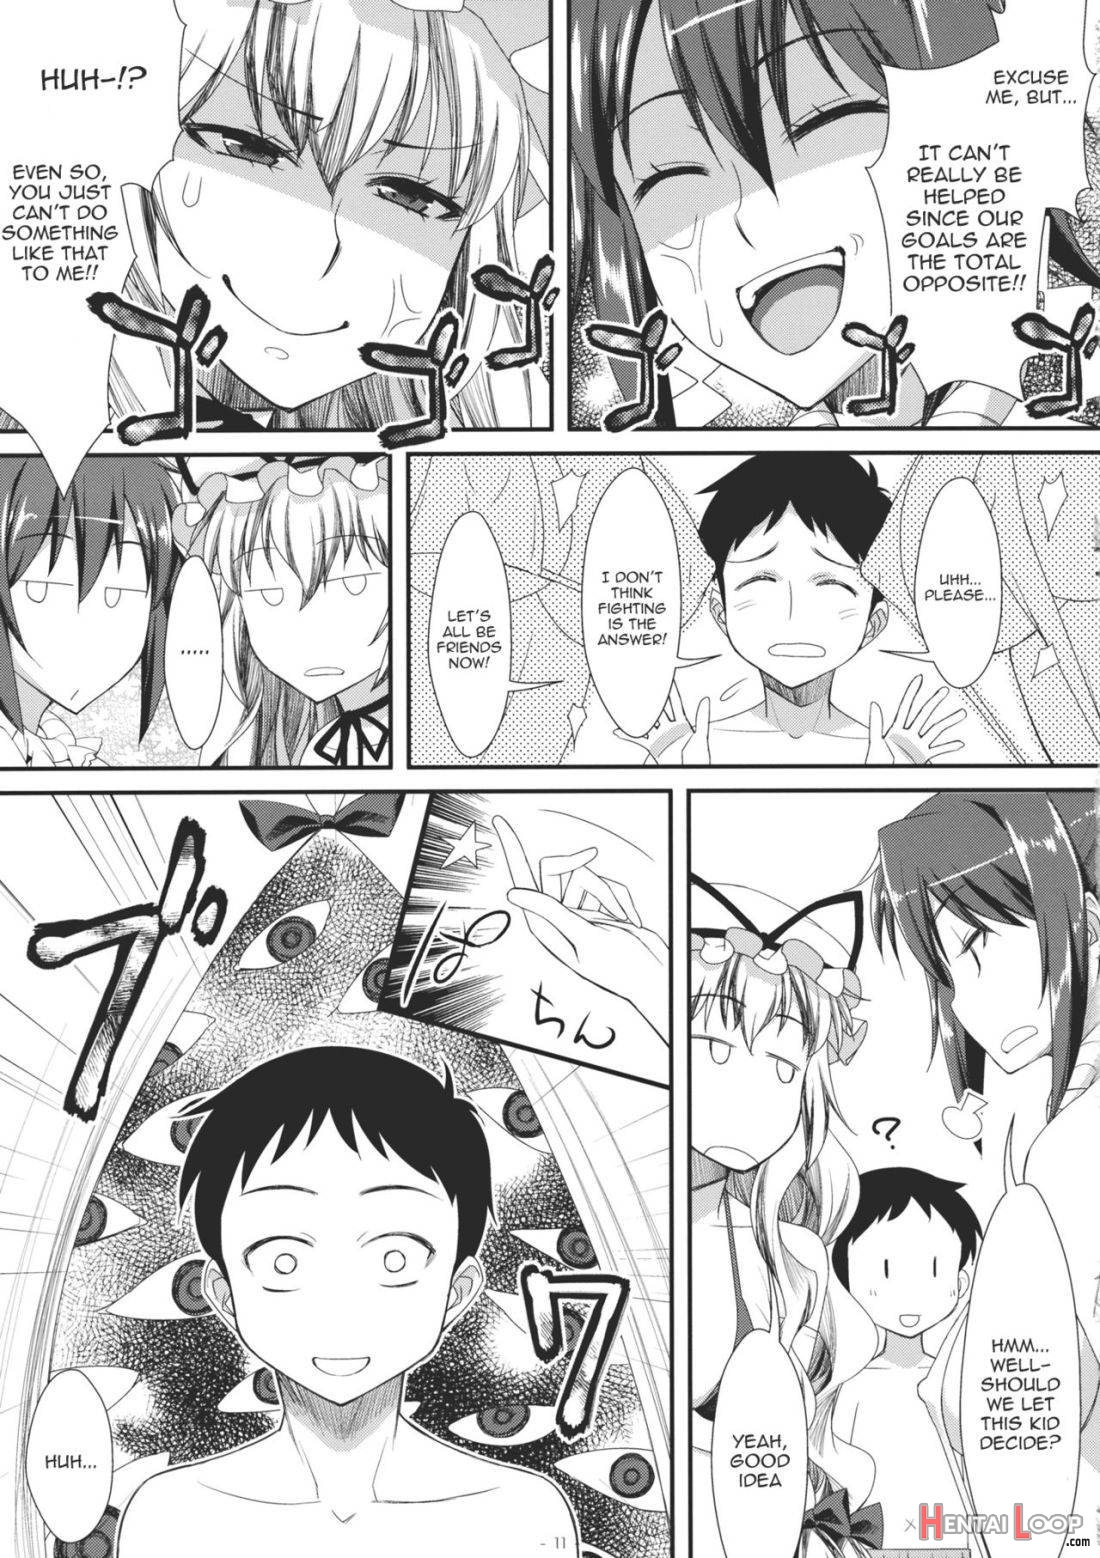 Yasei no Chijo ga Arawareta! 2 page 10